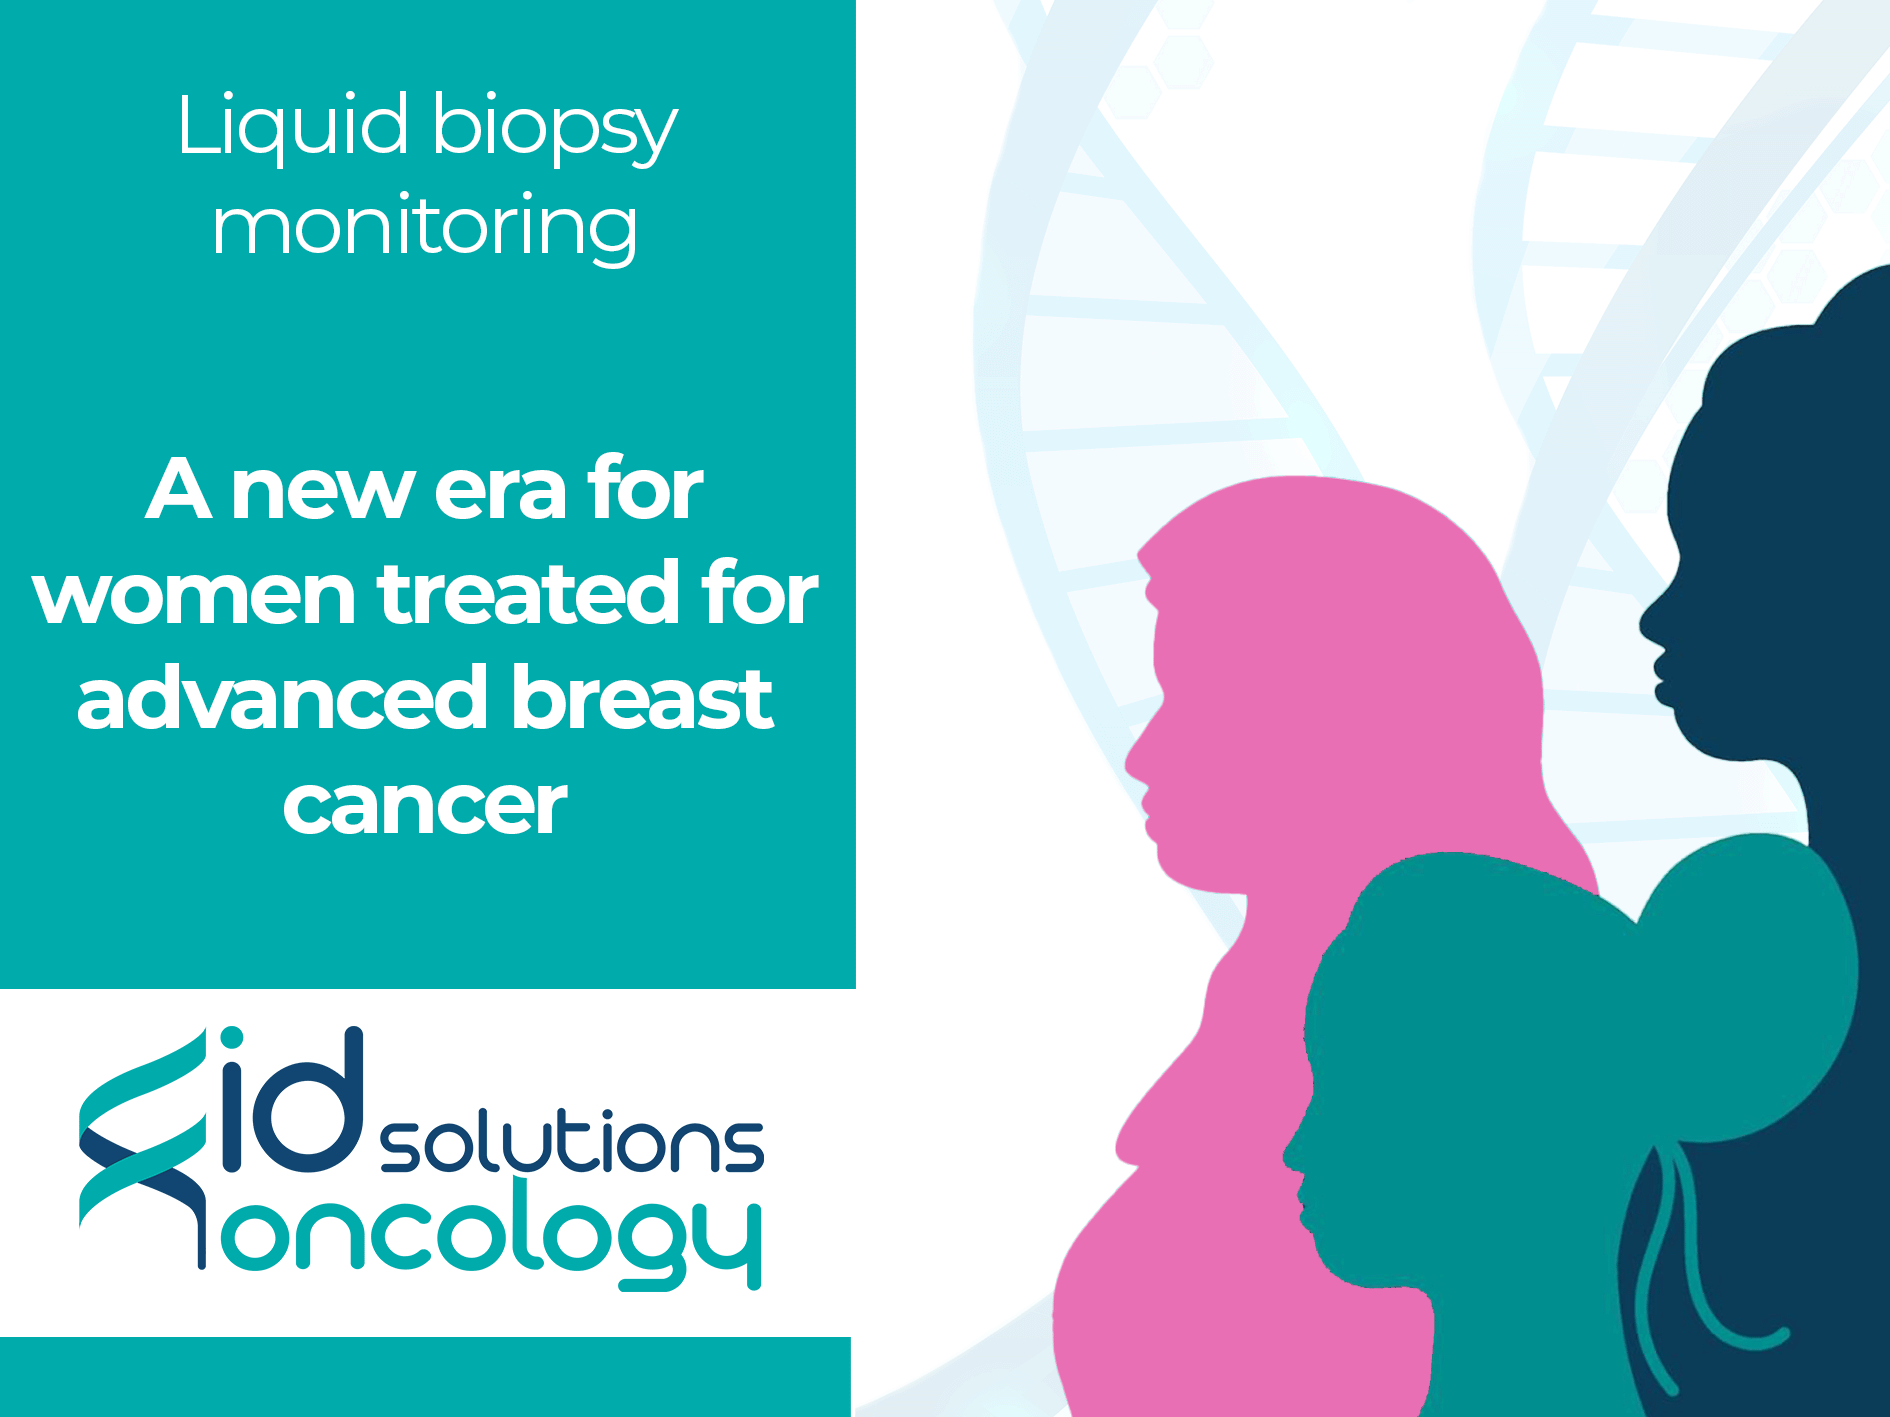 Suivi de la biopsie liquide : Une nouvelle ère pour les femmes traitées pour un cancer du sein avancé